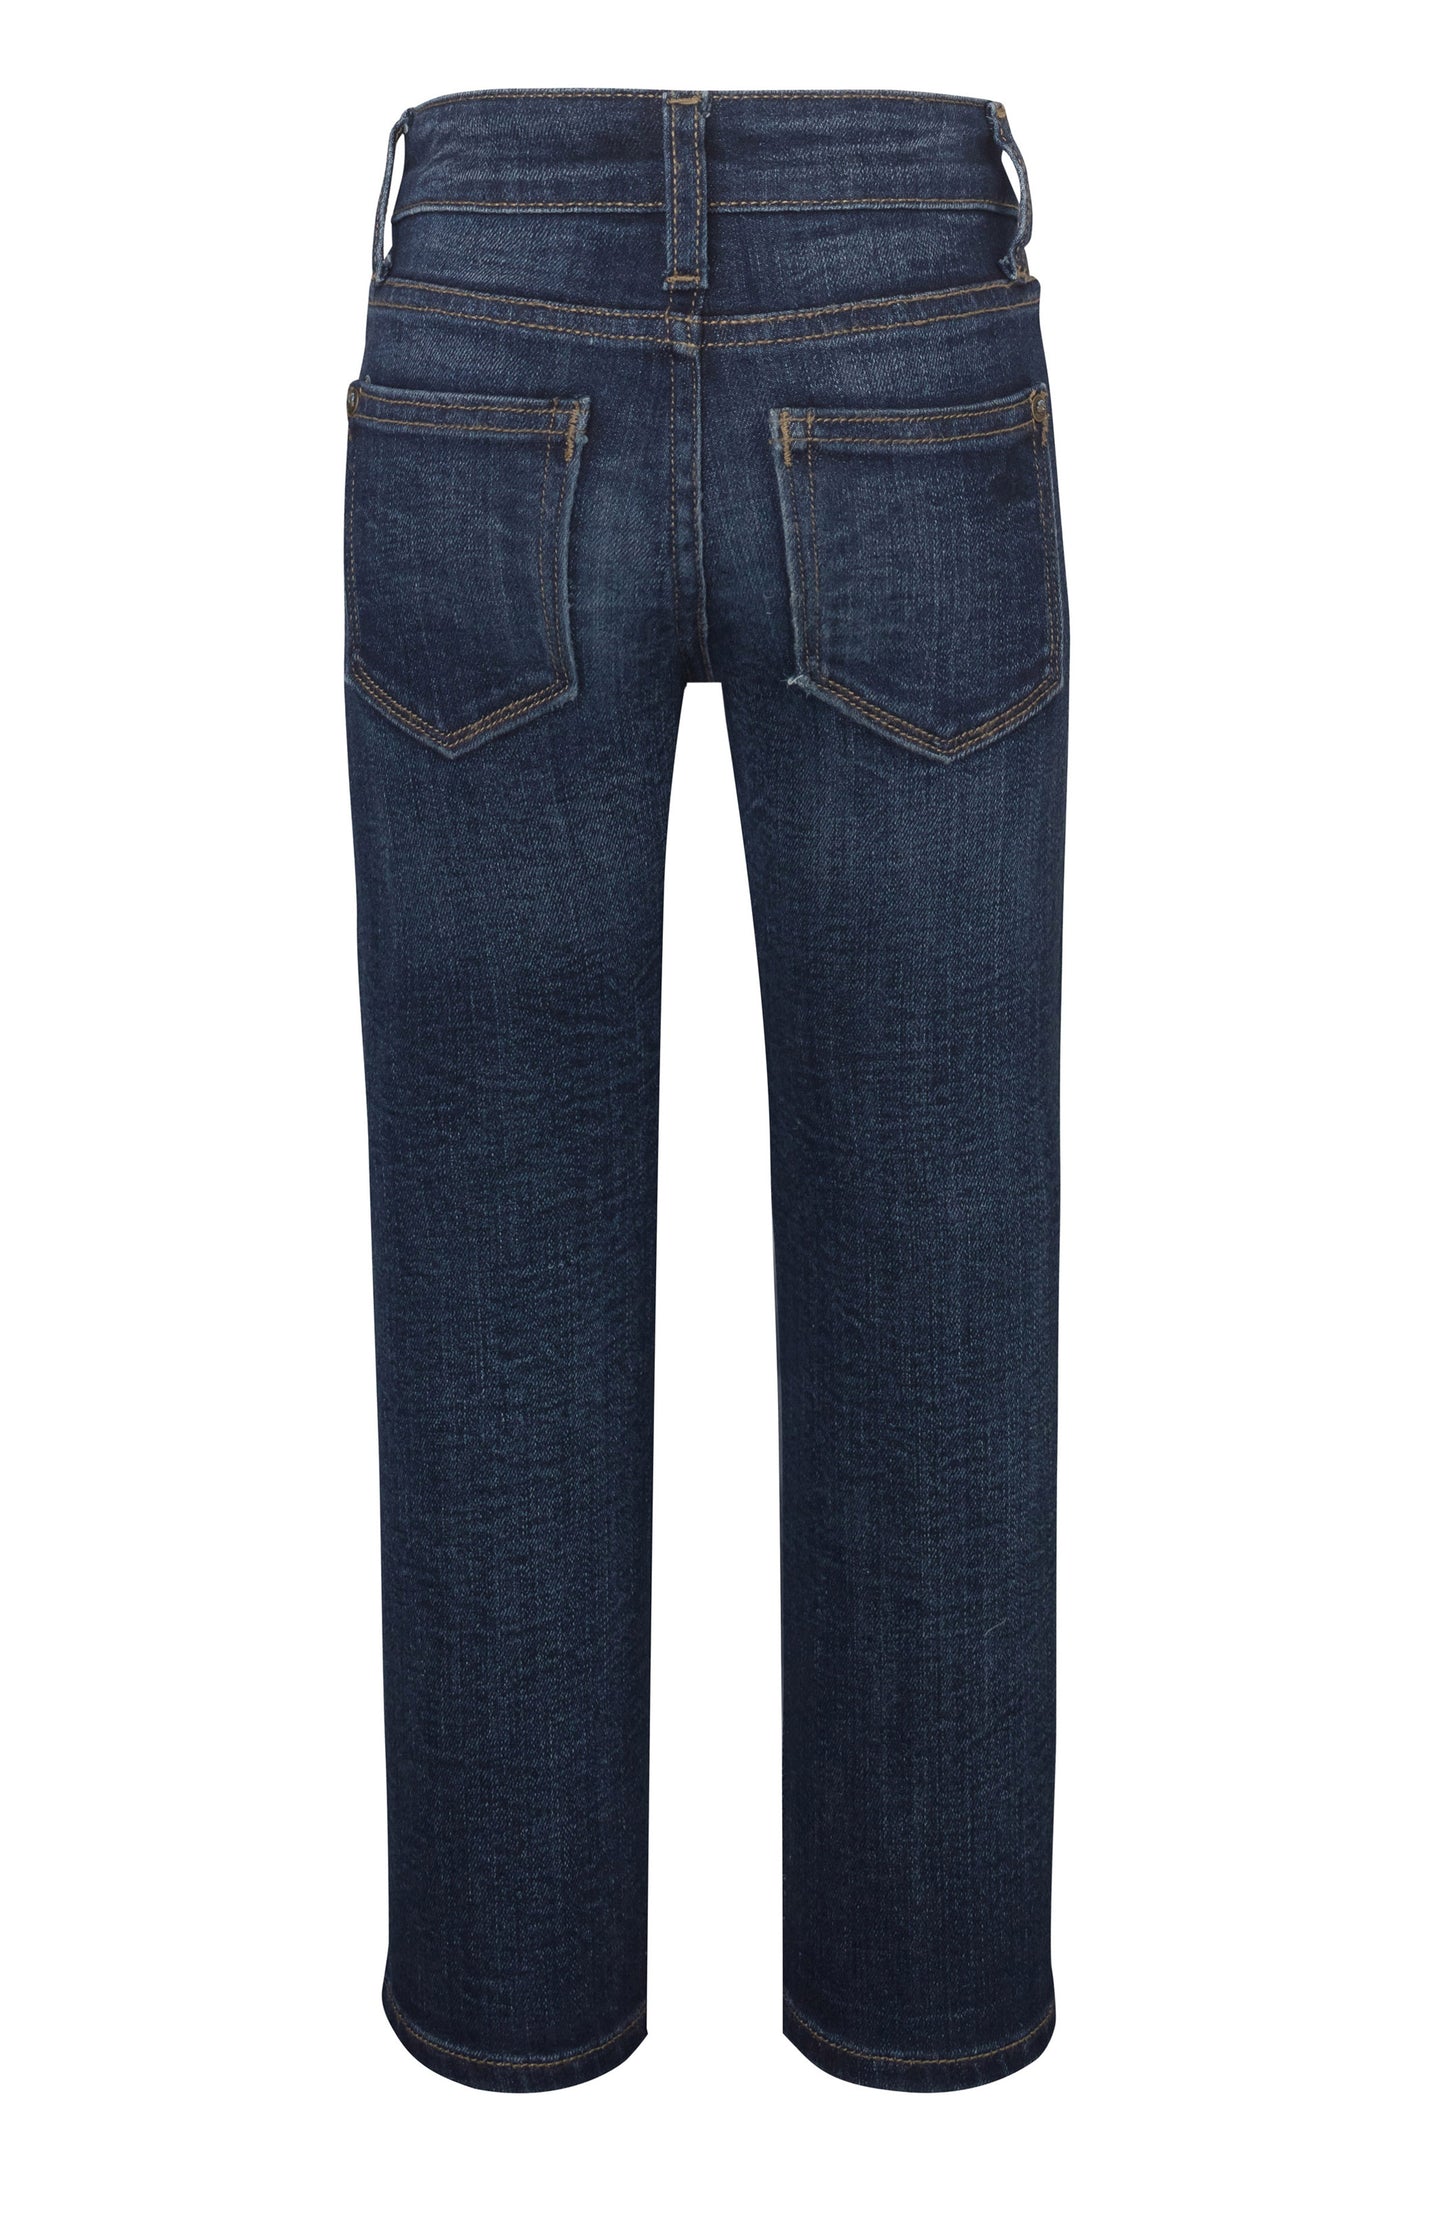 DL1961 Brady Slim Fit Jeans